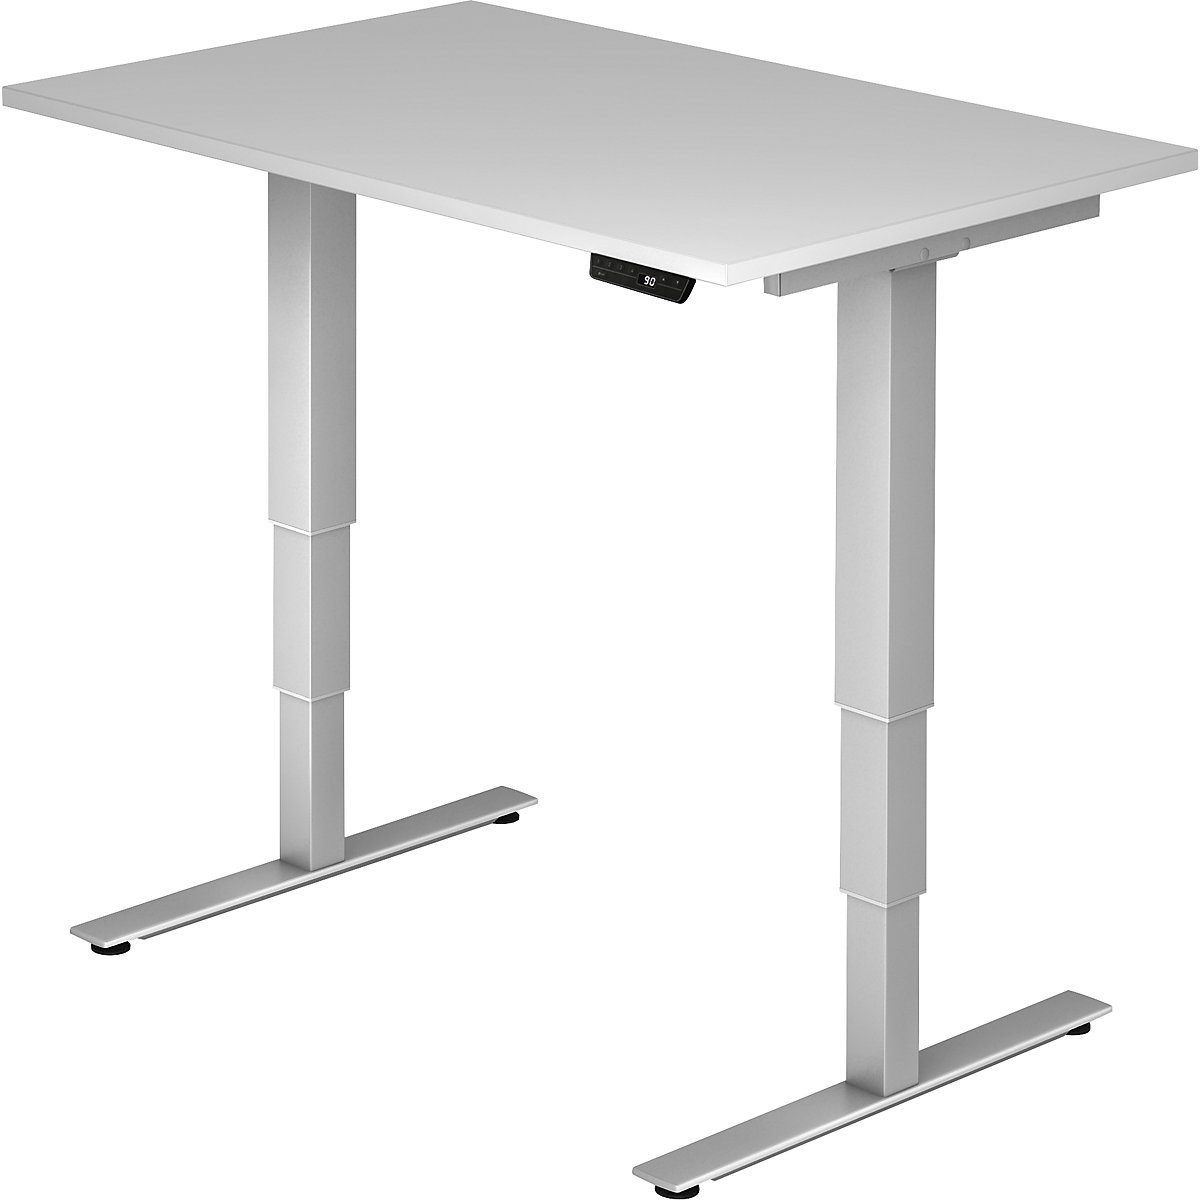 UPLINER-2.0 Psací stůl pro práci vestoje, s elektrickým přestavováním výšky, podstavec s nohami ve tvaru T, šířka 1200 mm, světle šedá